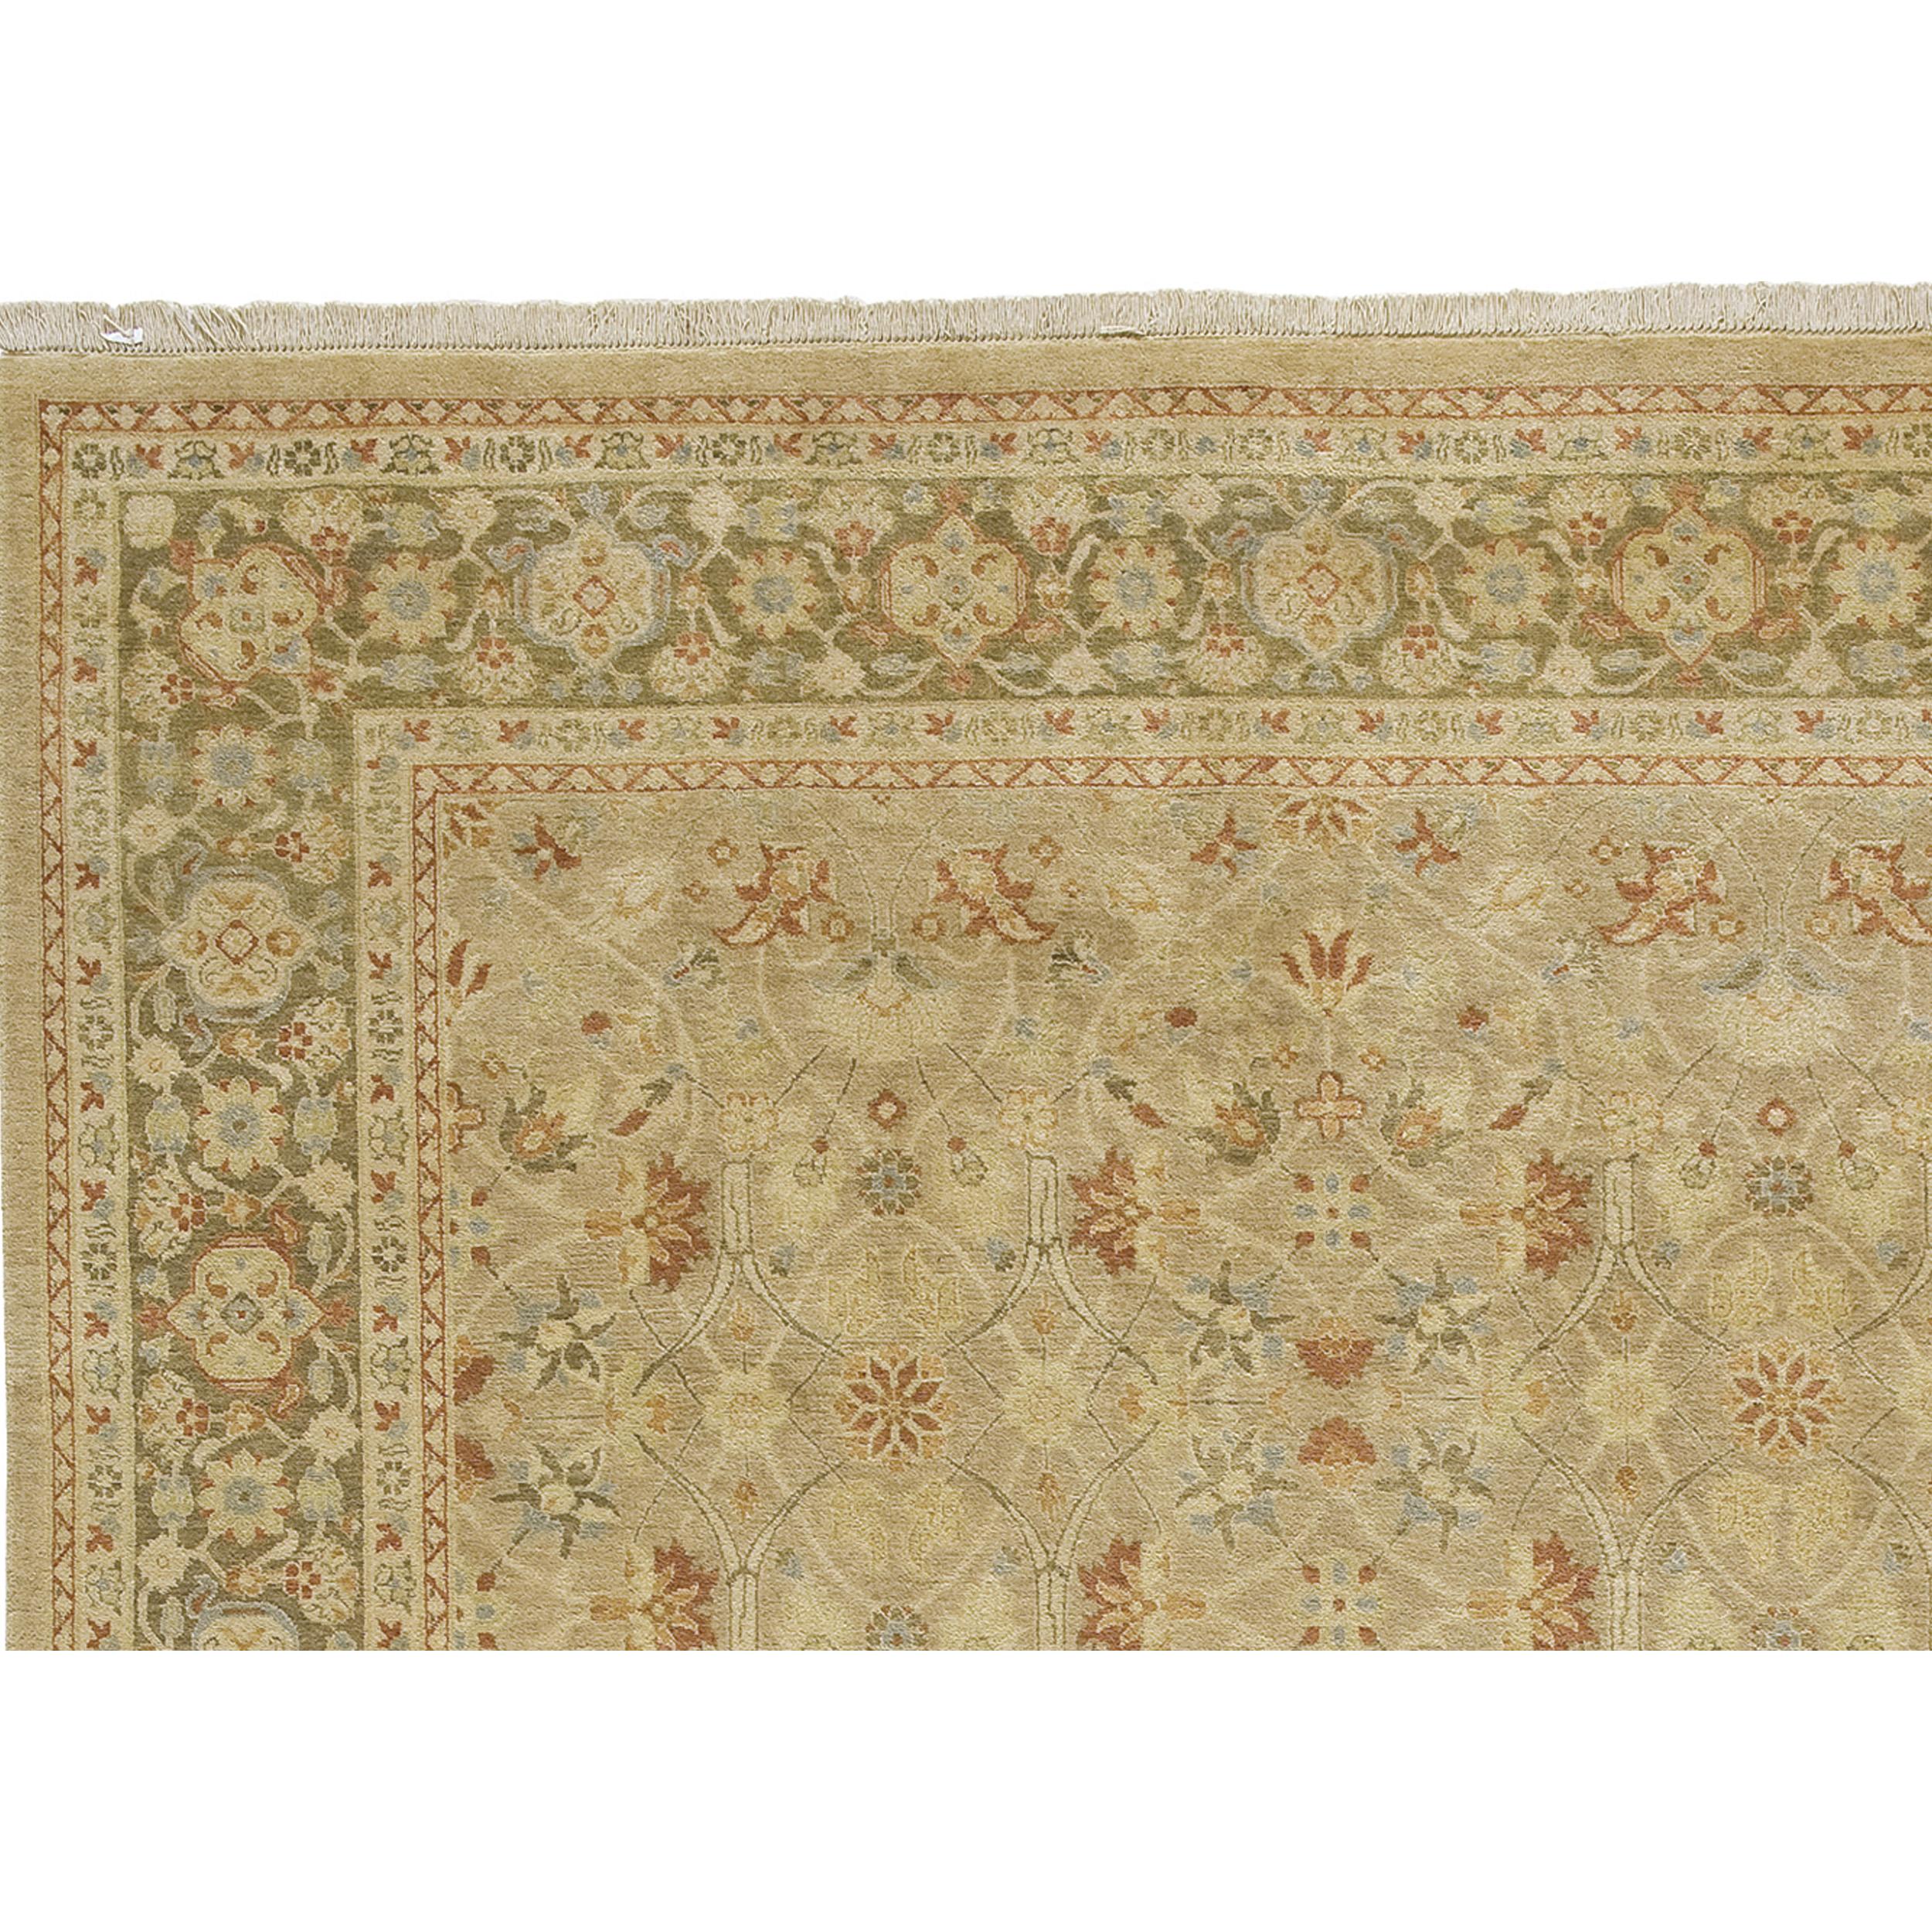 Dieser exquisite handgewebte Teppich stammt von den meisterhaften Kunsthandwerkern Pakistans, wo Generationen von Webkenntnissen und eine tiefe Wertschätzung für die Kunst der Teppichherstellung zusammenkommen. Es wird nur die hochwertigste Wolle